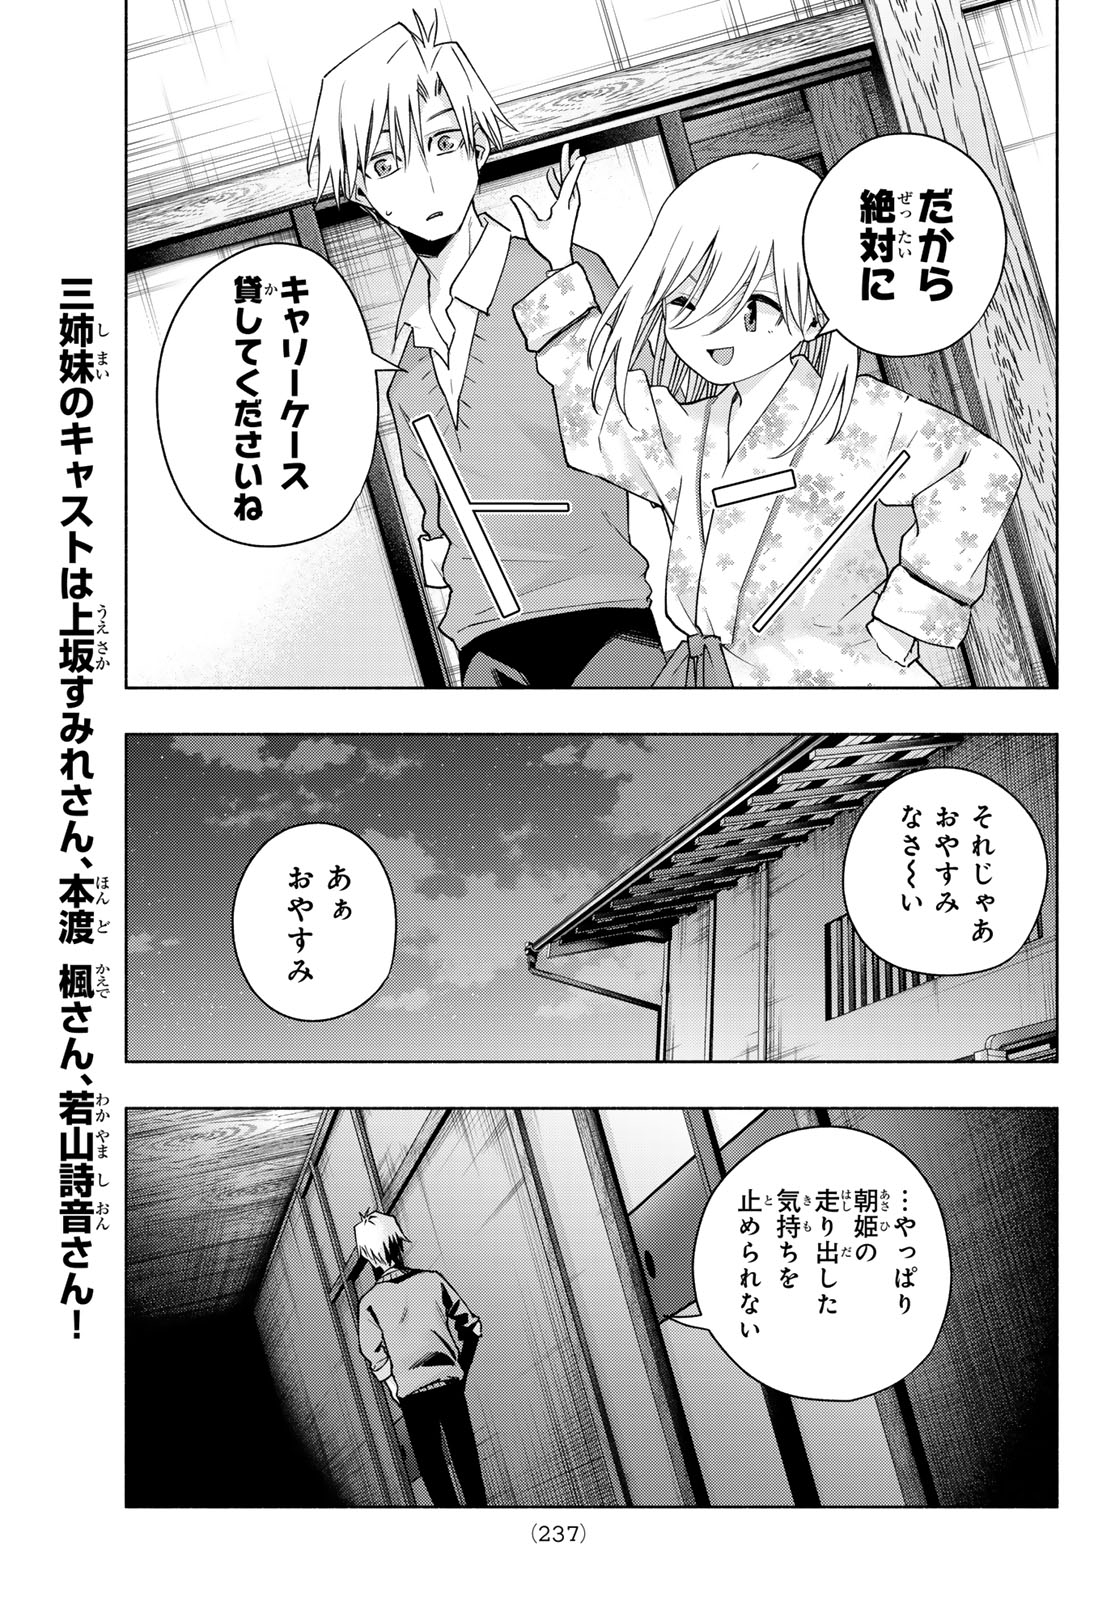 Amagami-san Chi no Enmusubi - Chapter 135 - Page 19